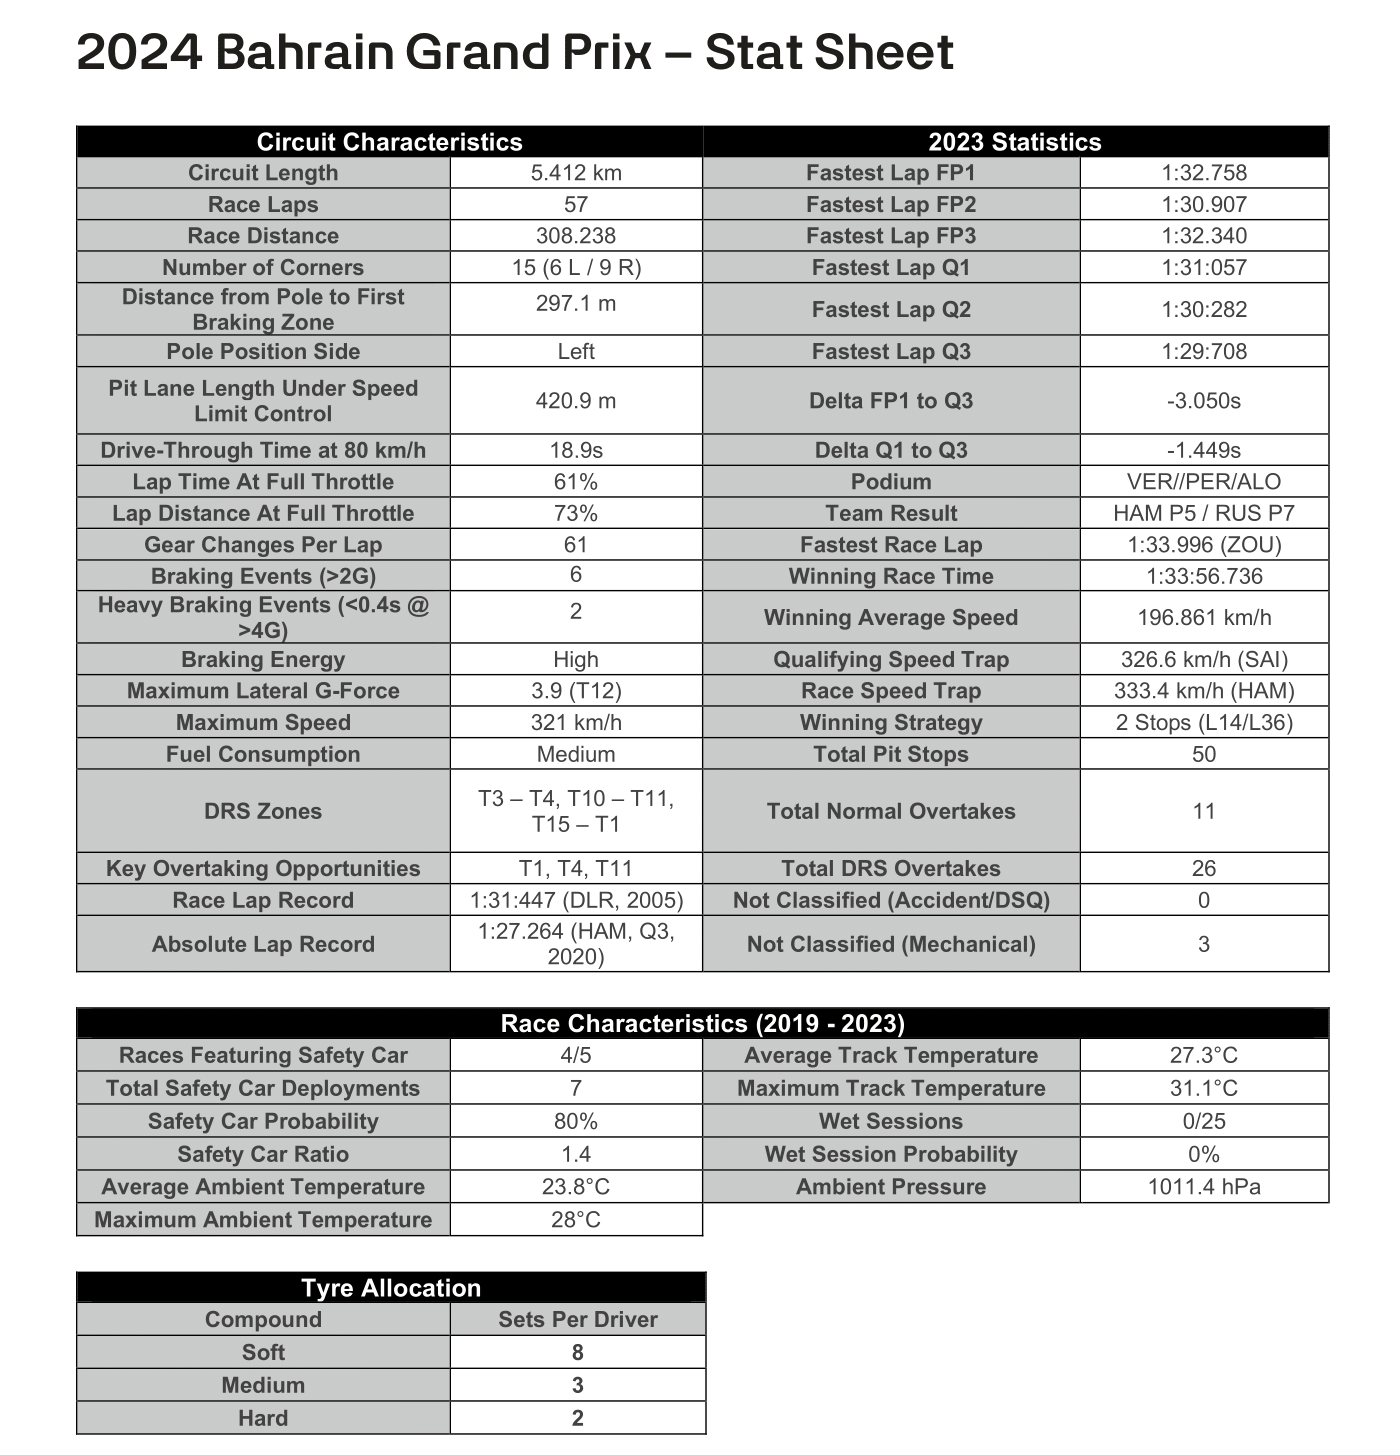 2024 Bahrain Grand Prix Stats